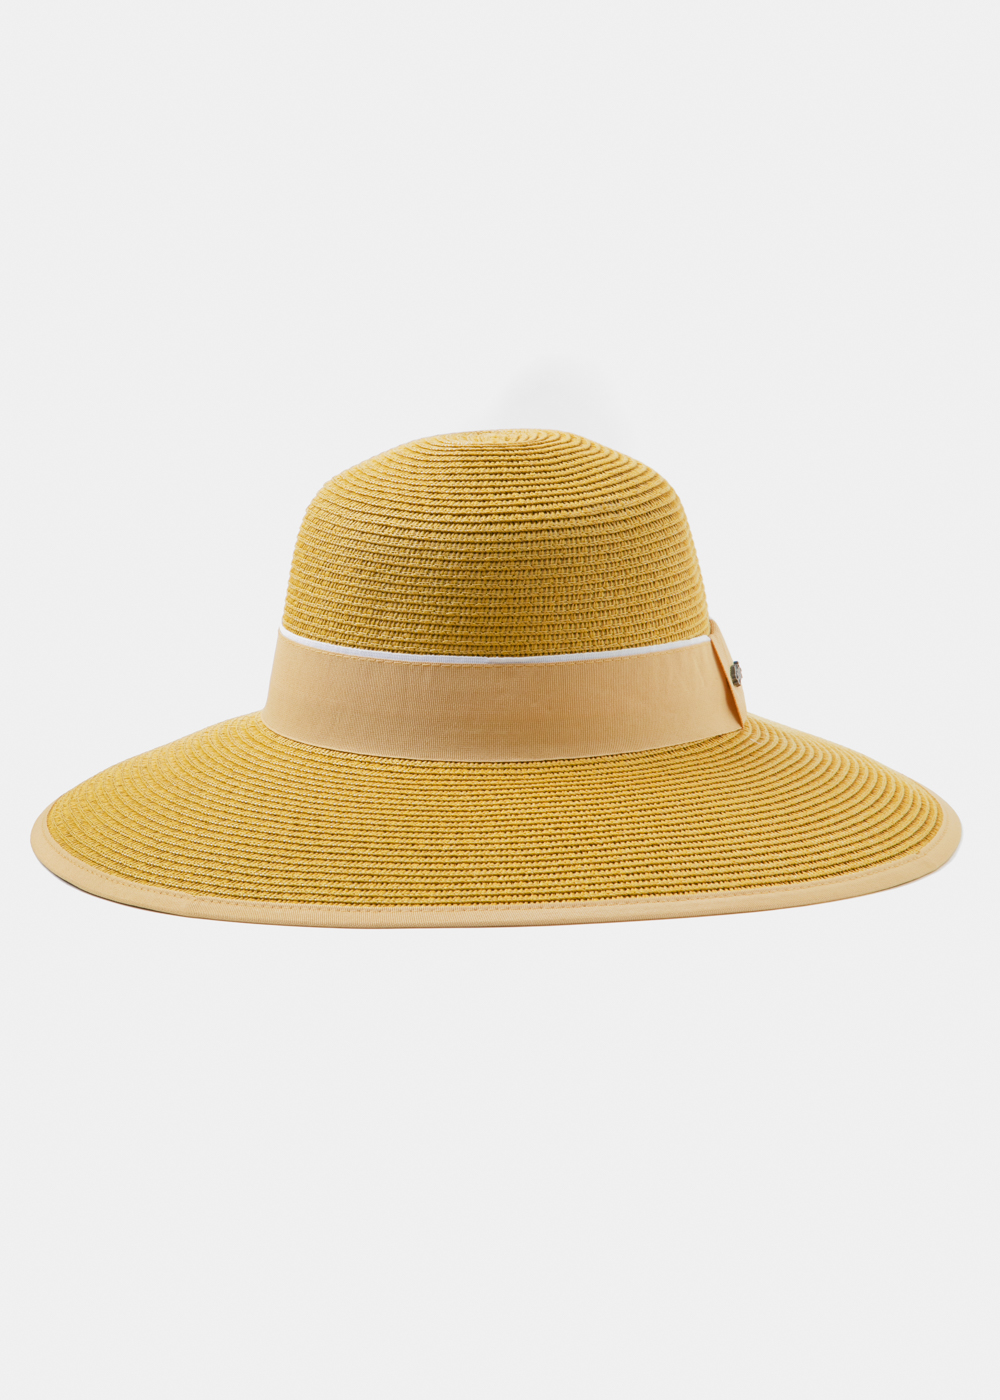 Mustard Straw Hat w/ mustard hatband